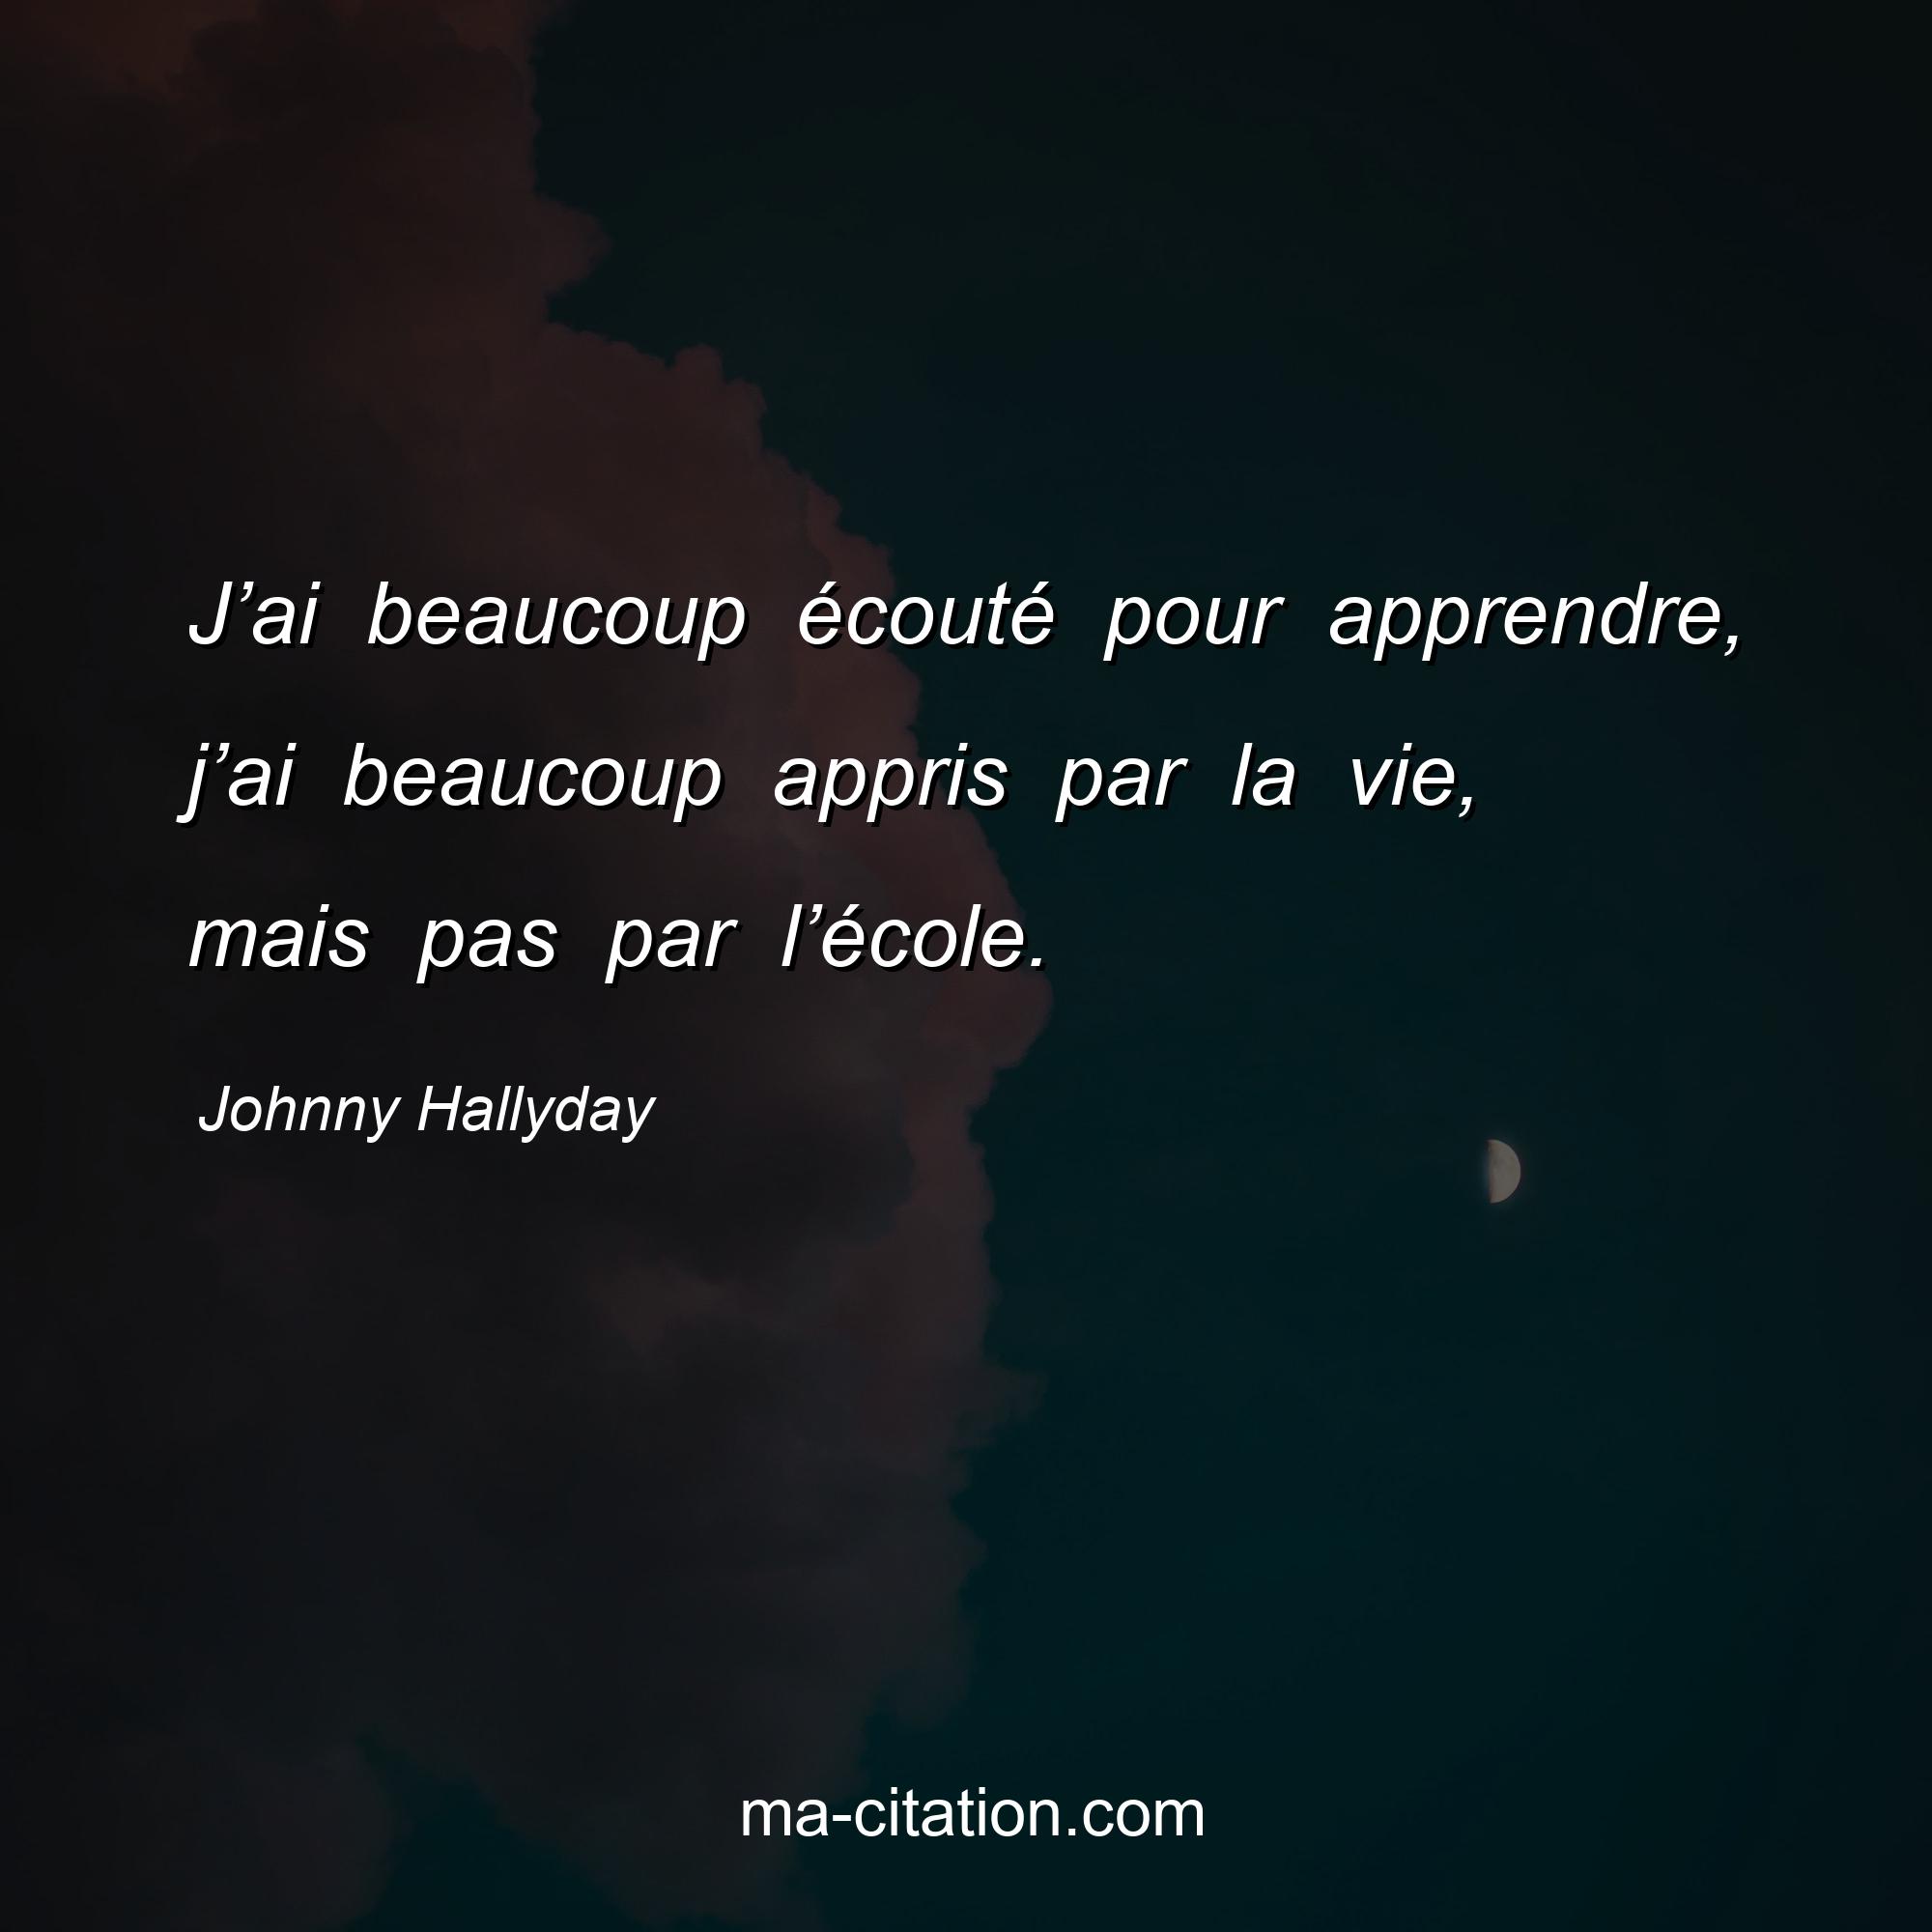 Johnny Hallyday : J’ai beaucoup écouté pour apprendre, j’ai beaucoup appris par la vie, mais pas par l’école.